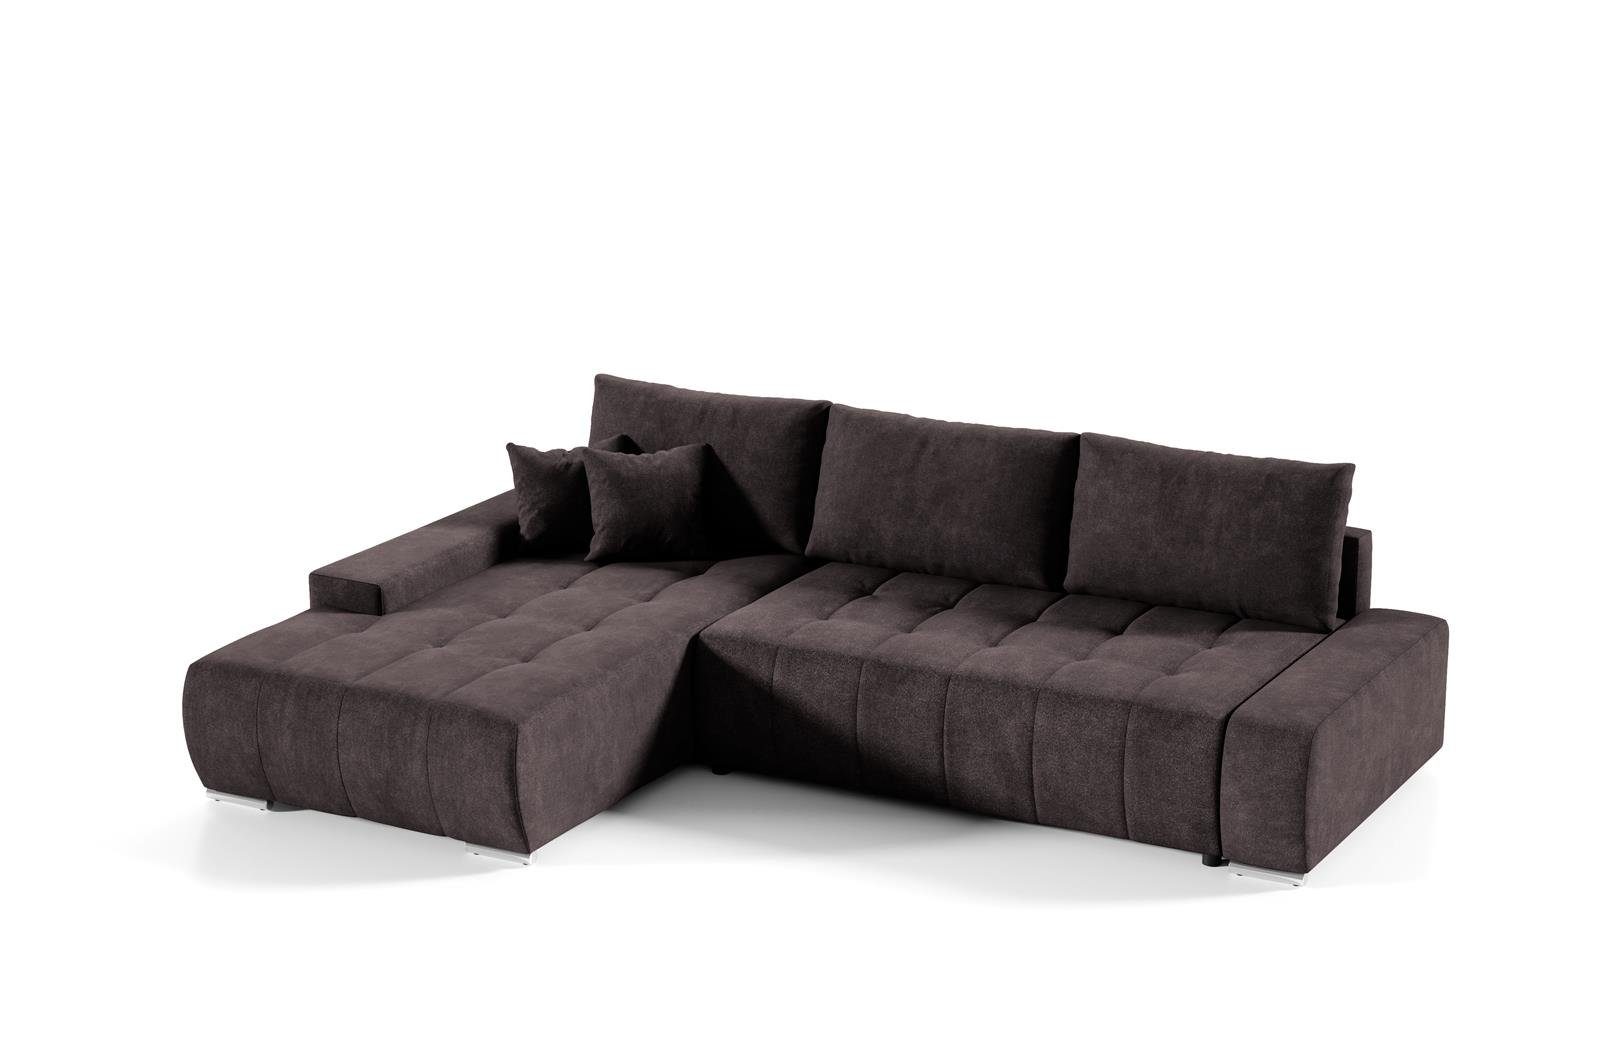 Beautysofa Ecksofa Ecksofa Sofa DRACO Schlaffunktion, Wohnzimmer Braun 04) Couch (aston mit Bettkasten